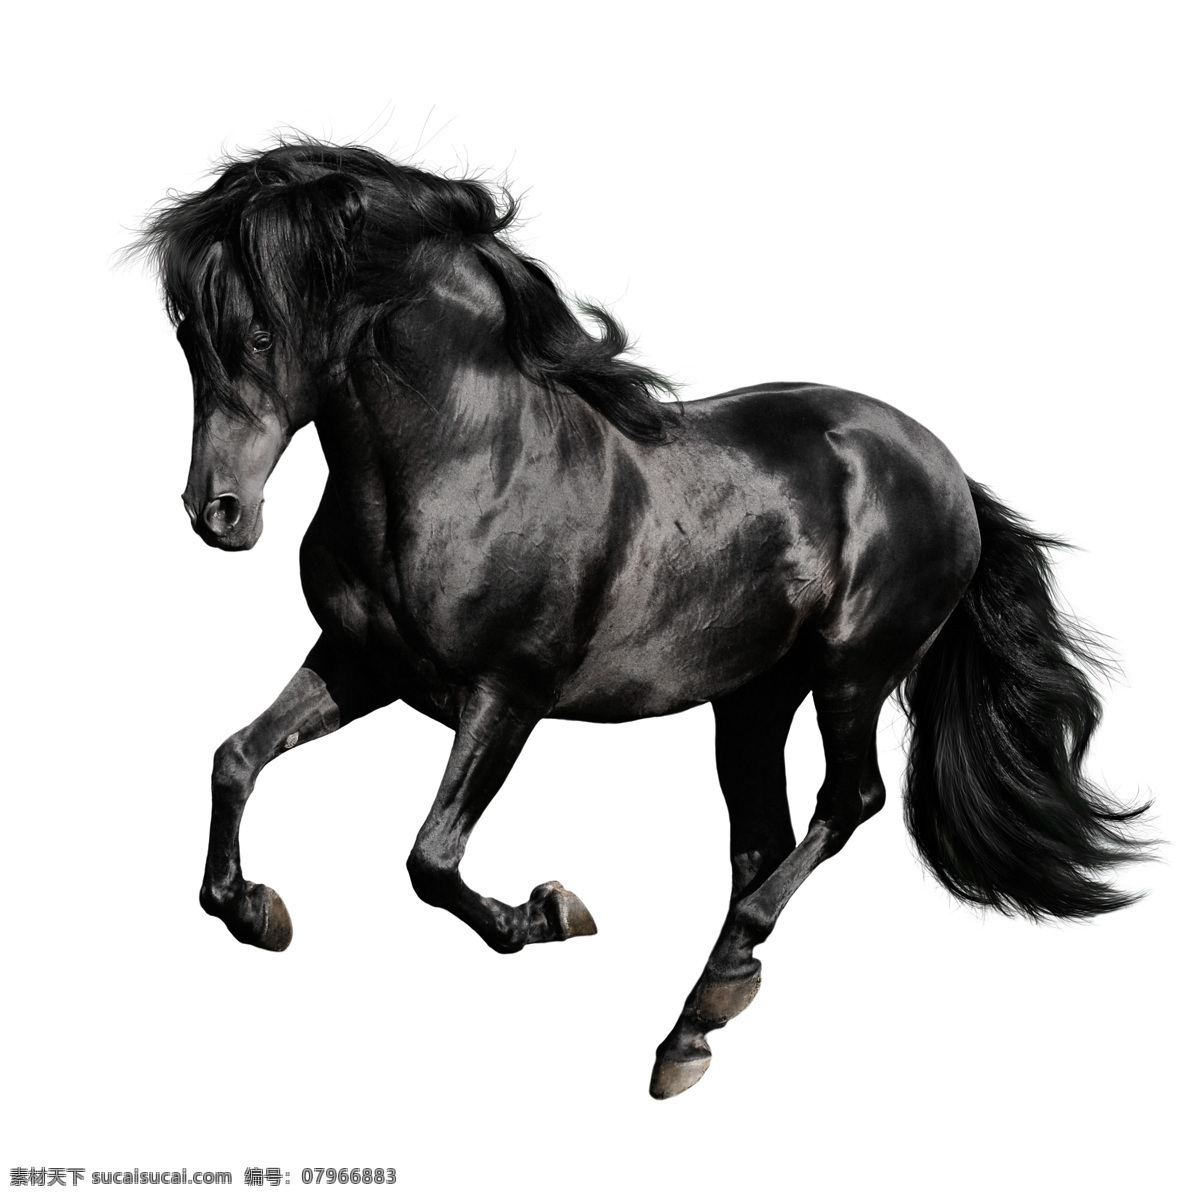 黑马 骏马 奔跑的骏马 黑色的马 高清美图 生物世界 野生动物